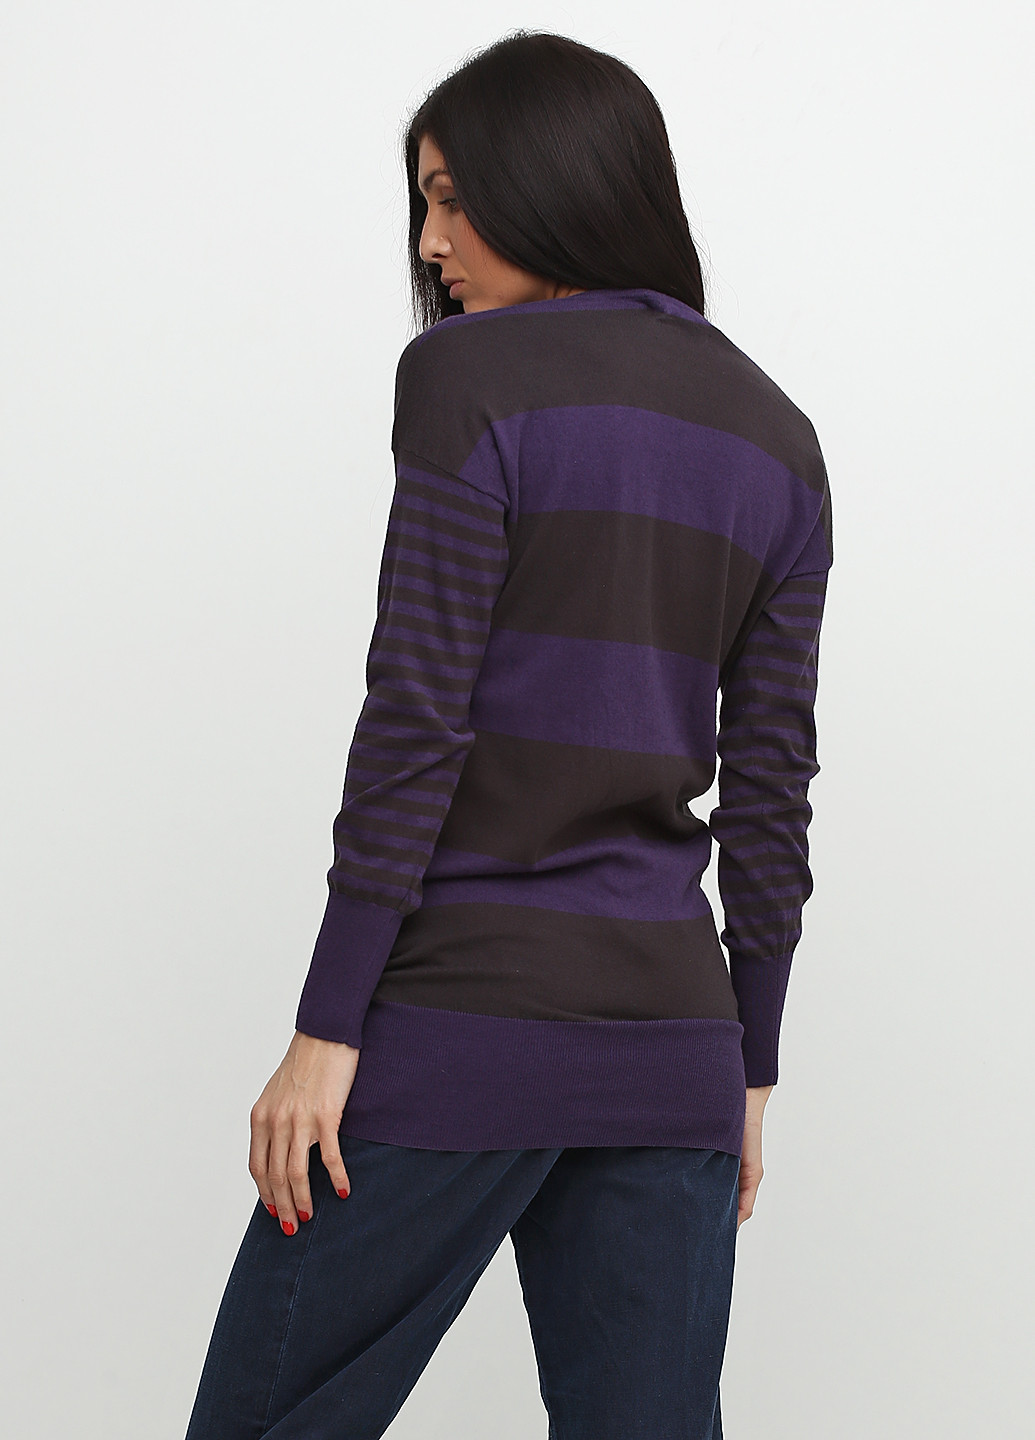 Фиолетовый демисезонный пуловер пуловер Kiabi